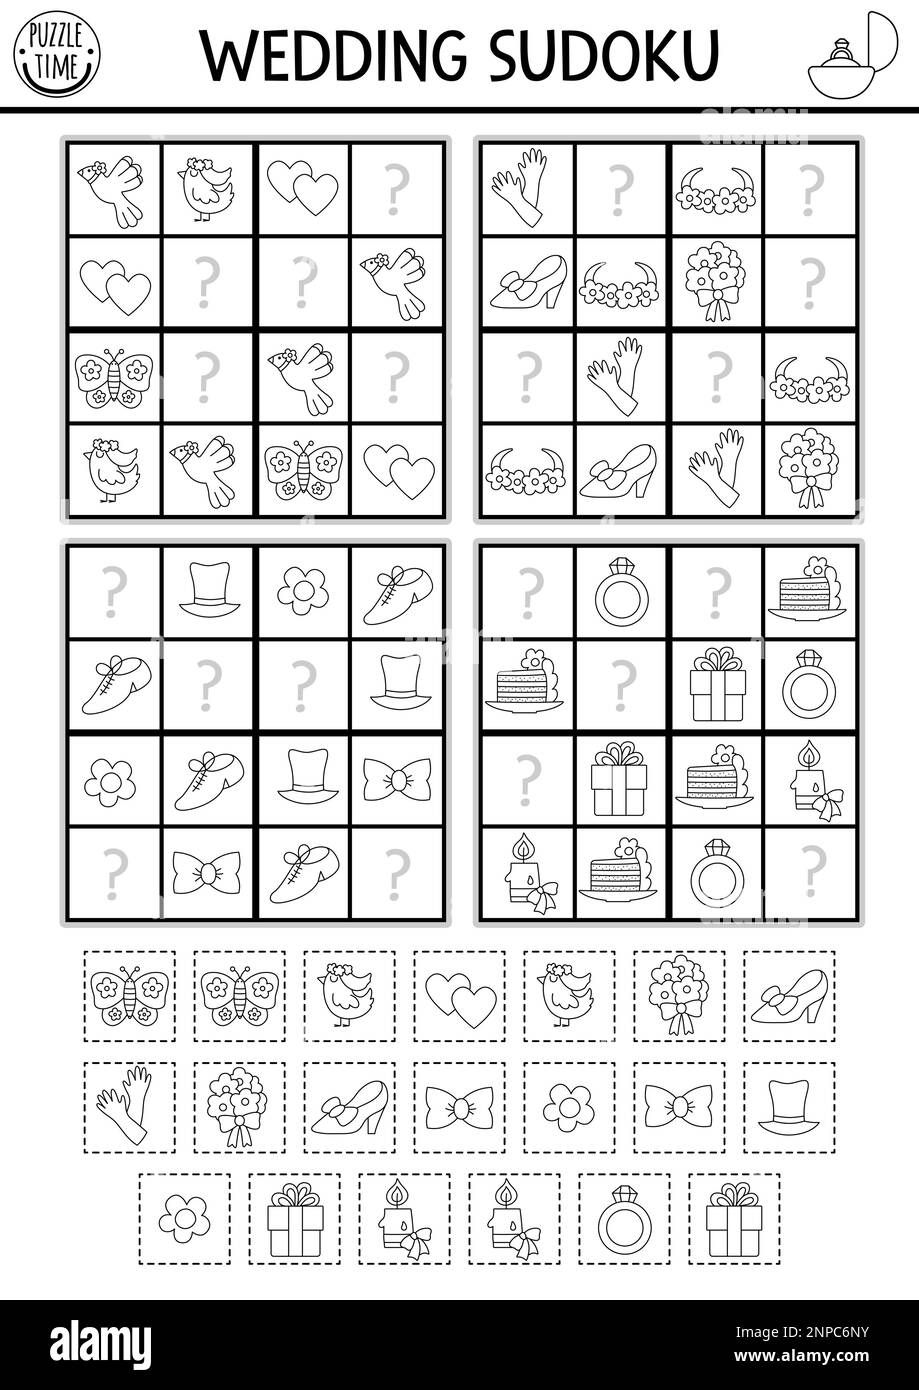 Vector schwarz-weiß Hochzeits-Sudoku-Puzzle für Kinder. Einfaches Quiz zur Hochzeitszeremonie mit Schneide- und Kleberelementen. Bildungsaktivität oder Ausmalseite w Stock Vektor